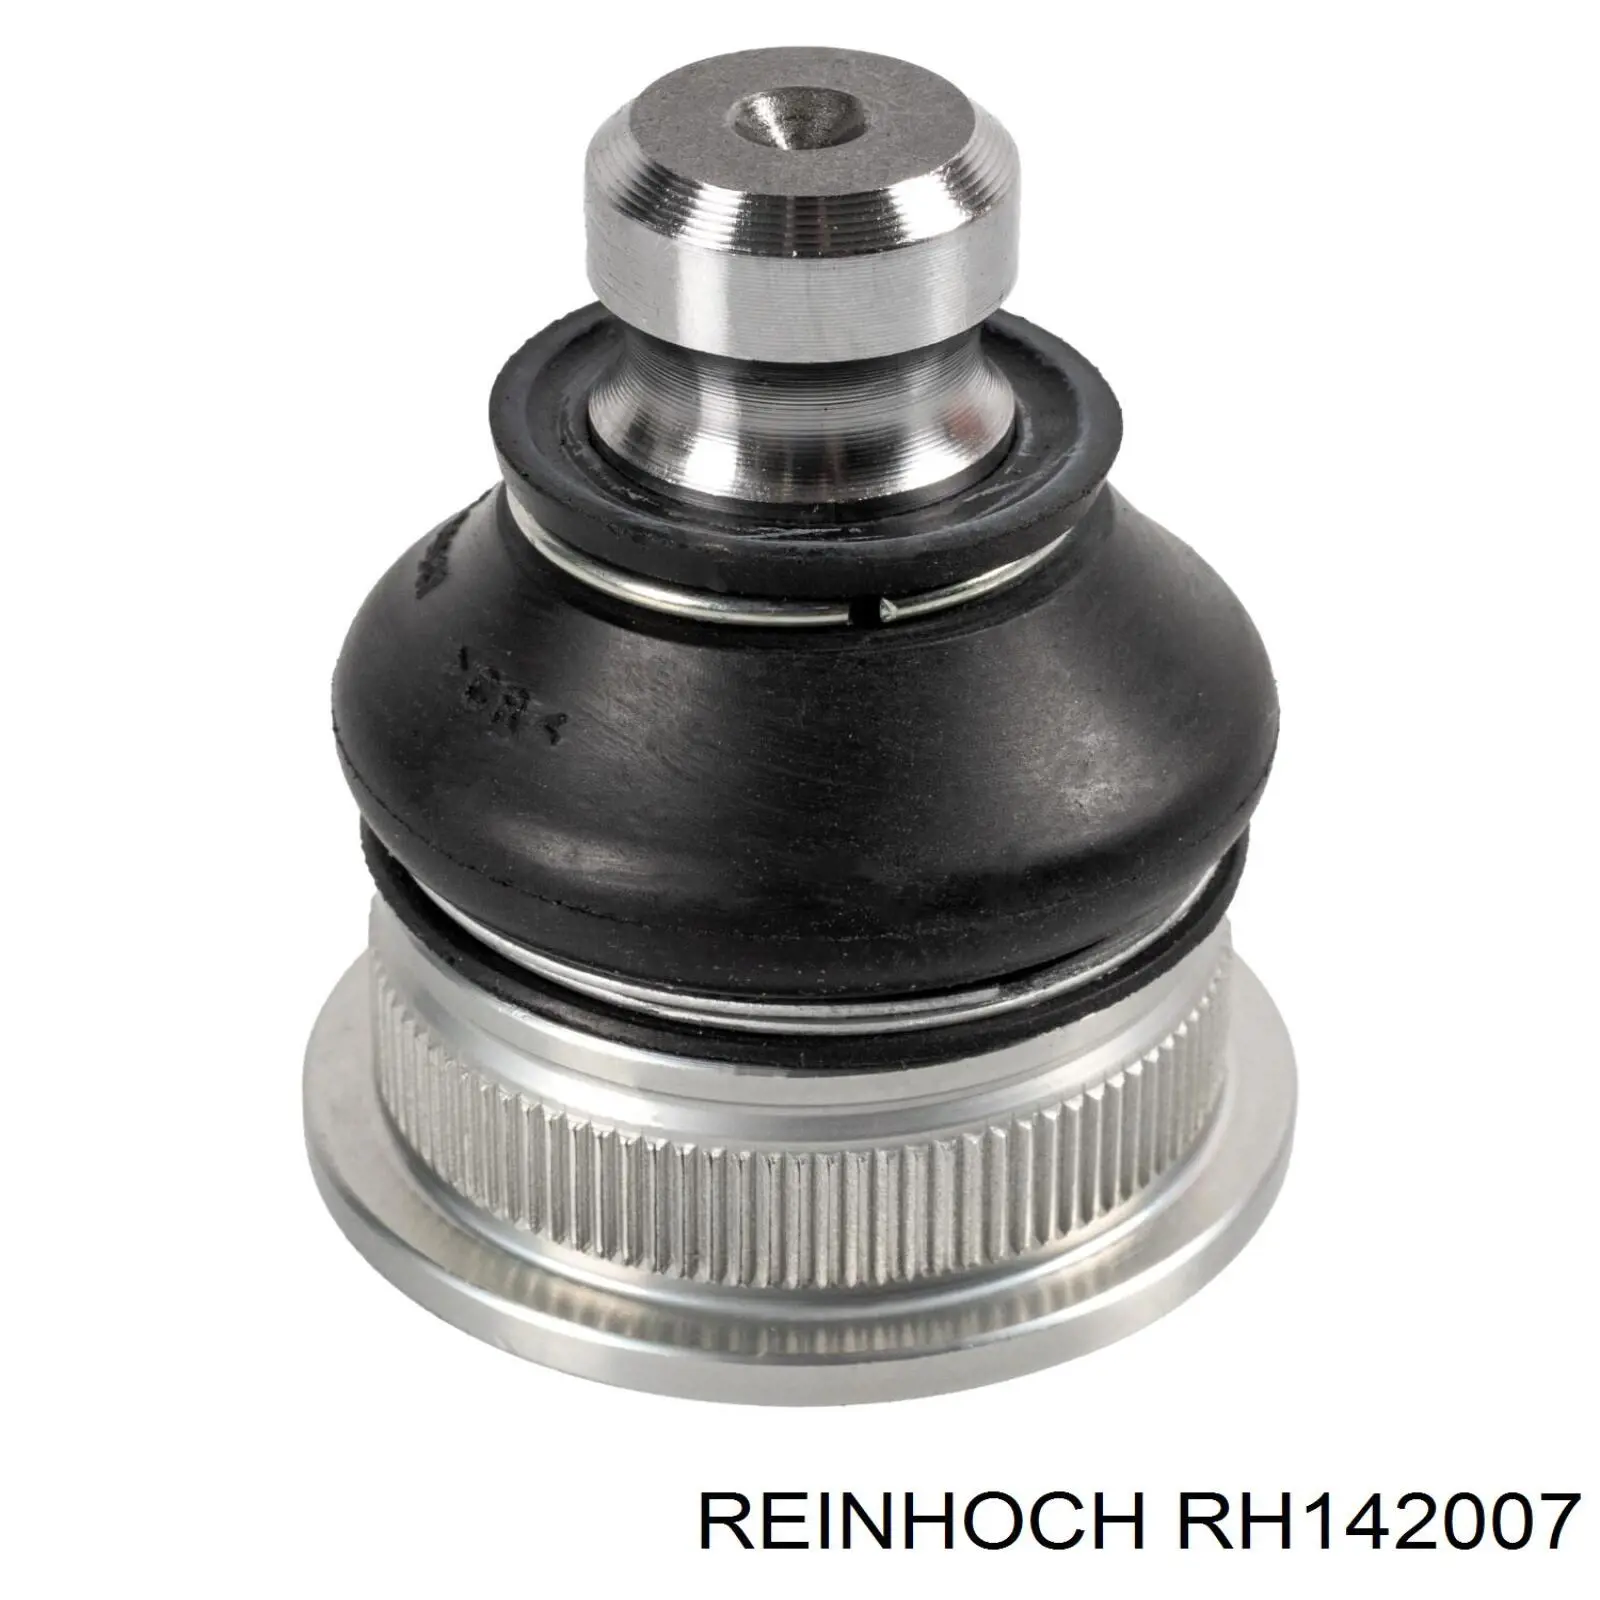 RH142007 Reinhoch silentblock de suspensión delantero inferior